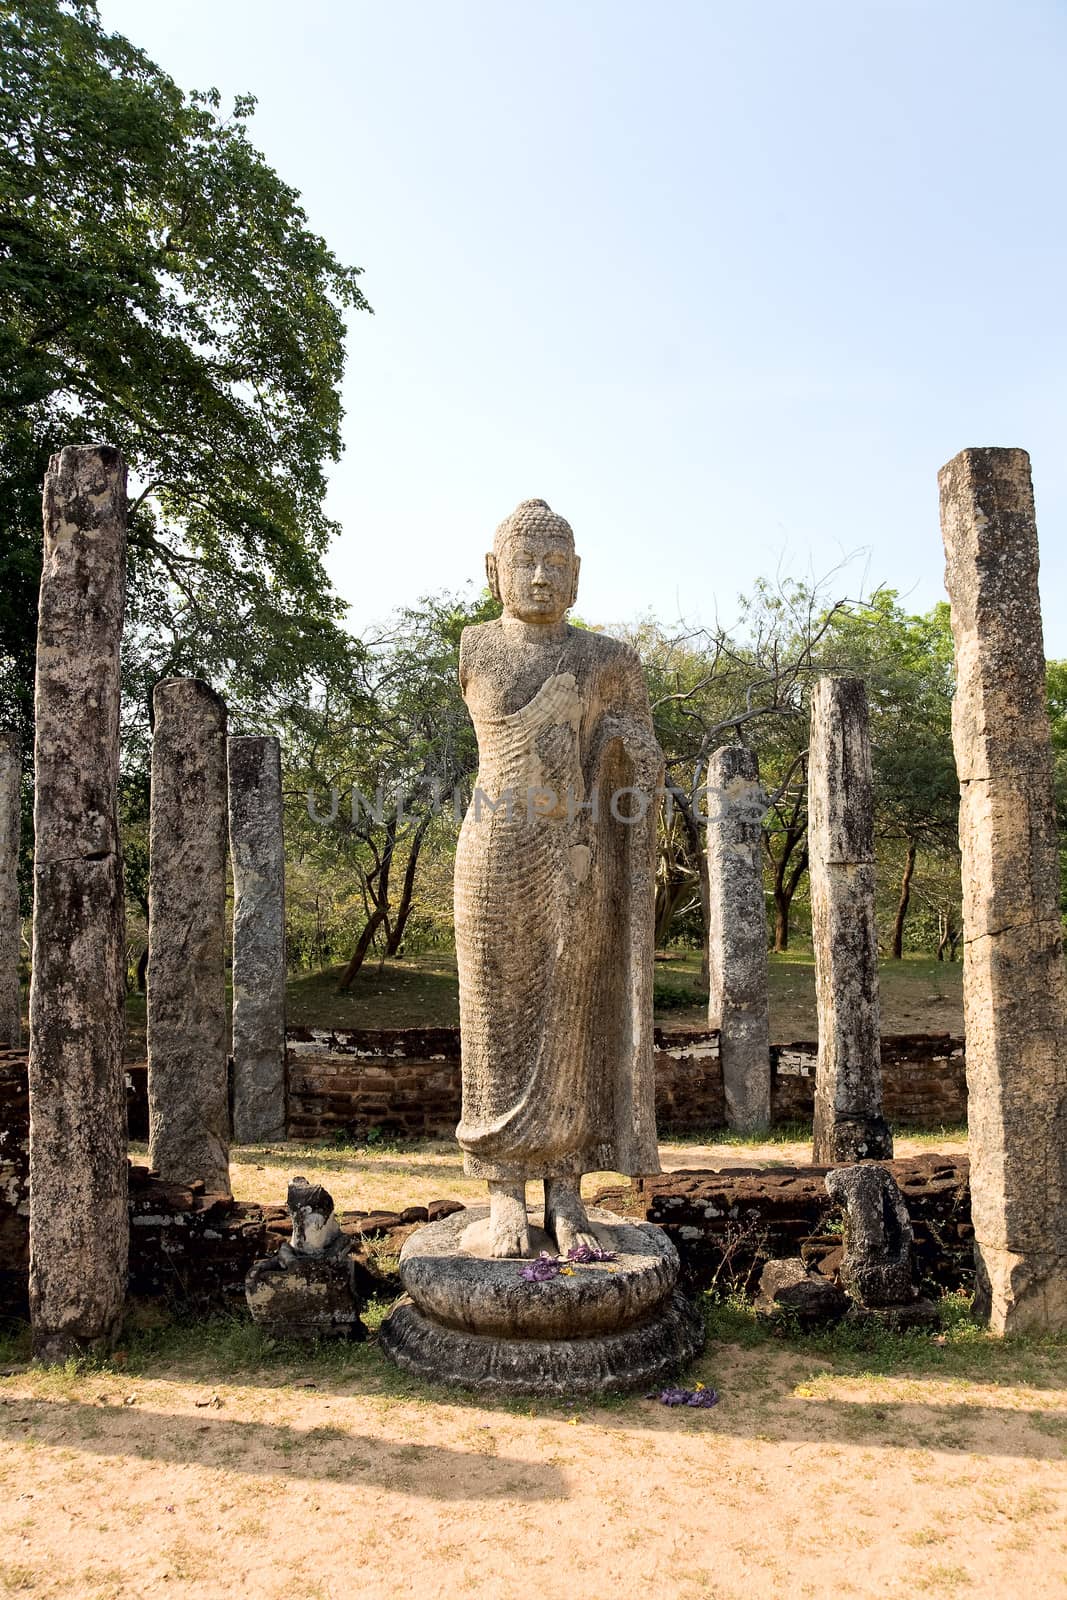  Buddha statue  in Polonnaruwa - vatadage temple, UNESCO World Heritage Site in Sri Lanka 